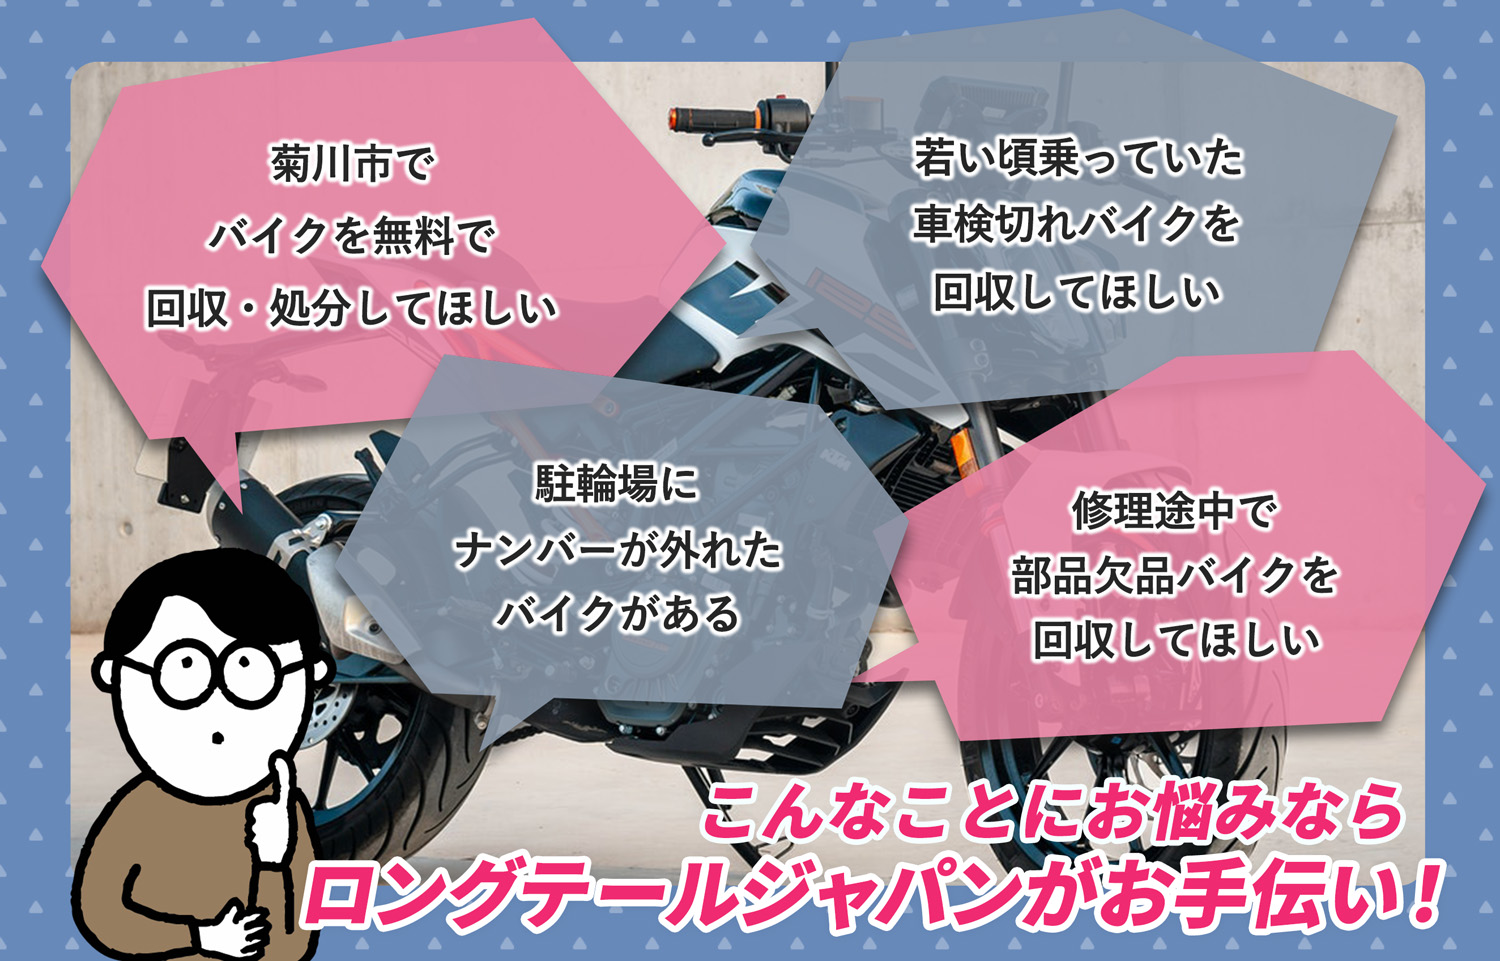 菊川市でこんなバイクの処分にお困りでしたらバイク無料回収処分隊がお手伝いいたします。